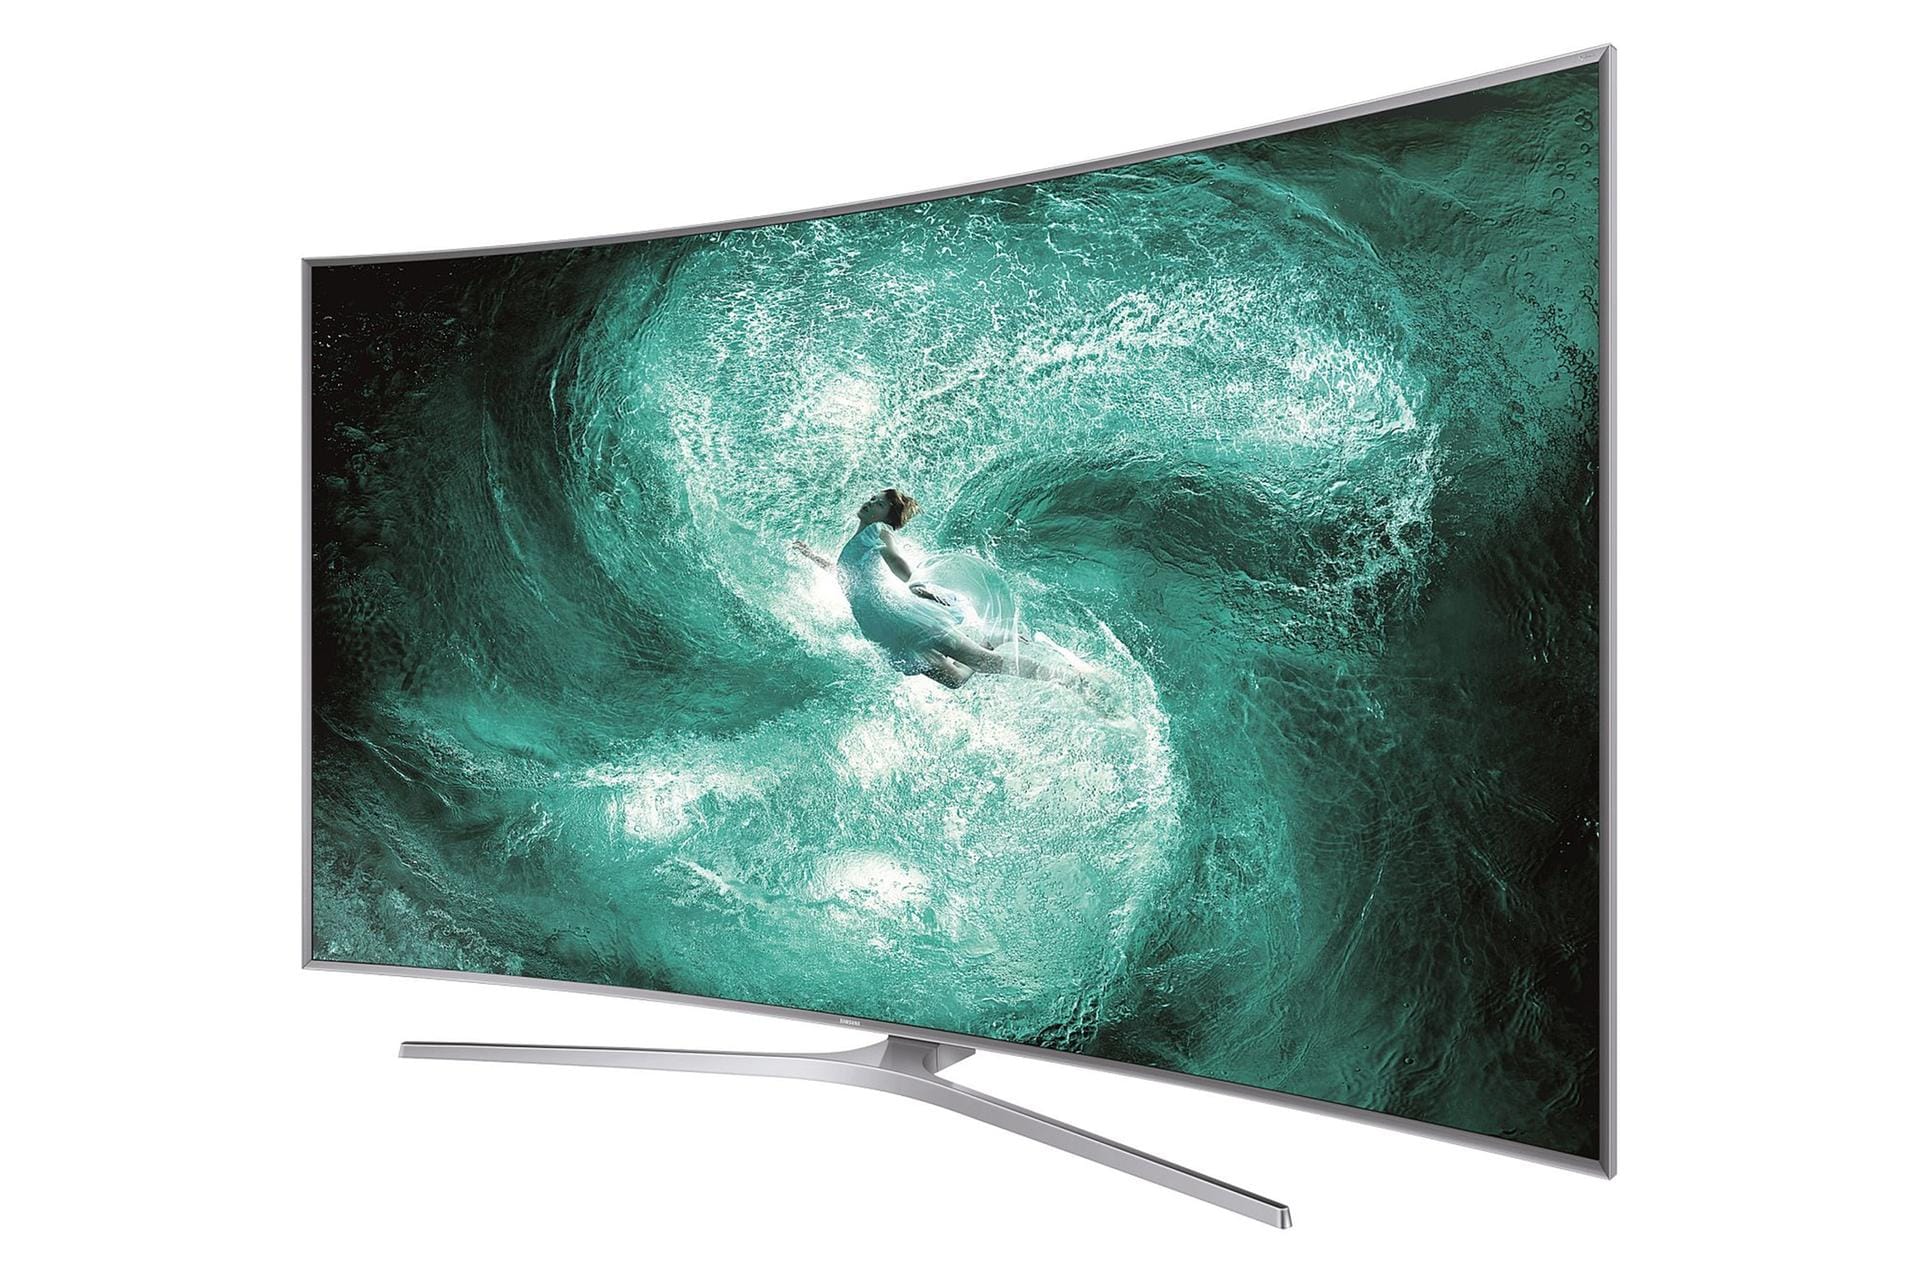 TV-Marktführer Samsung hat seine neusten Fernseher im Gepäck, darunter das Vorzeigemodell JS9590